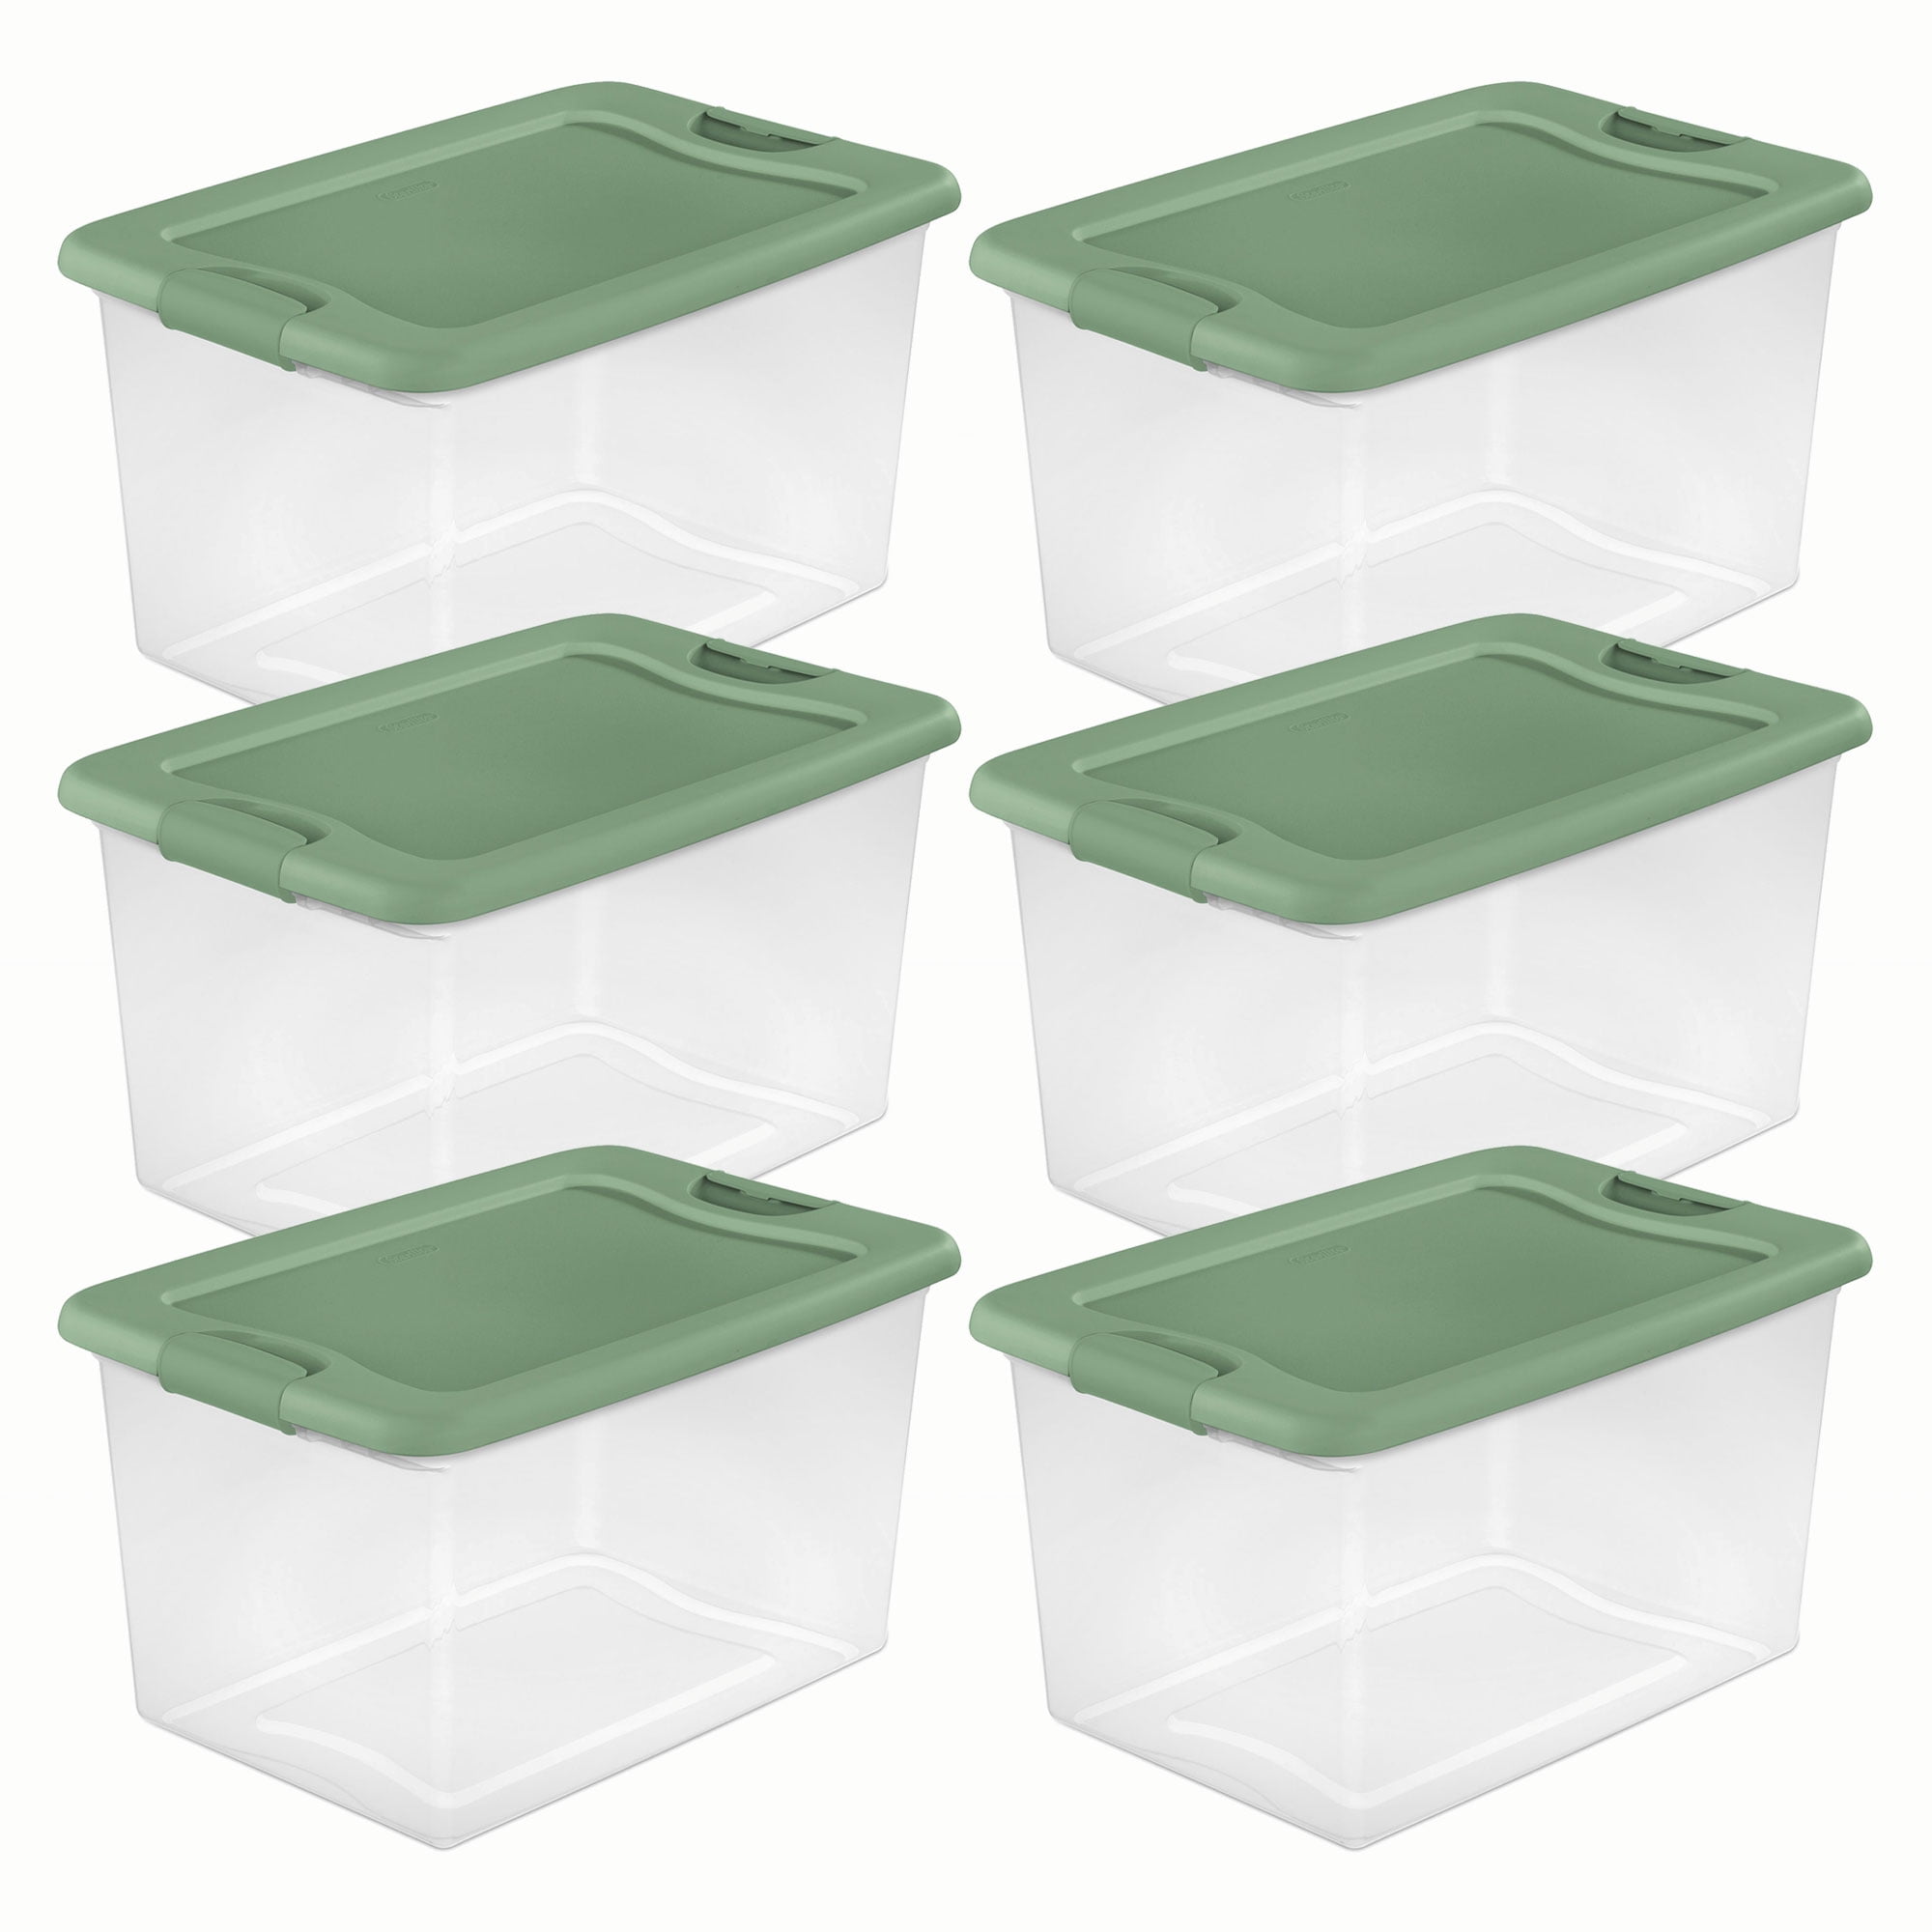 Sterilite 64-Qt. Plastic Storage Container Tote 6 Pack